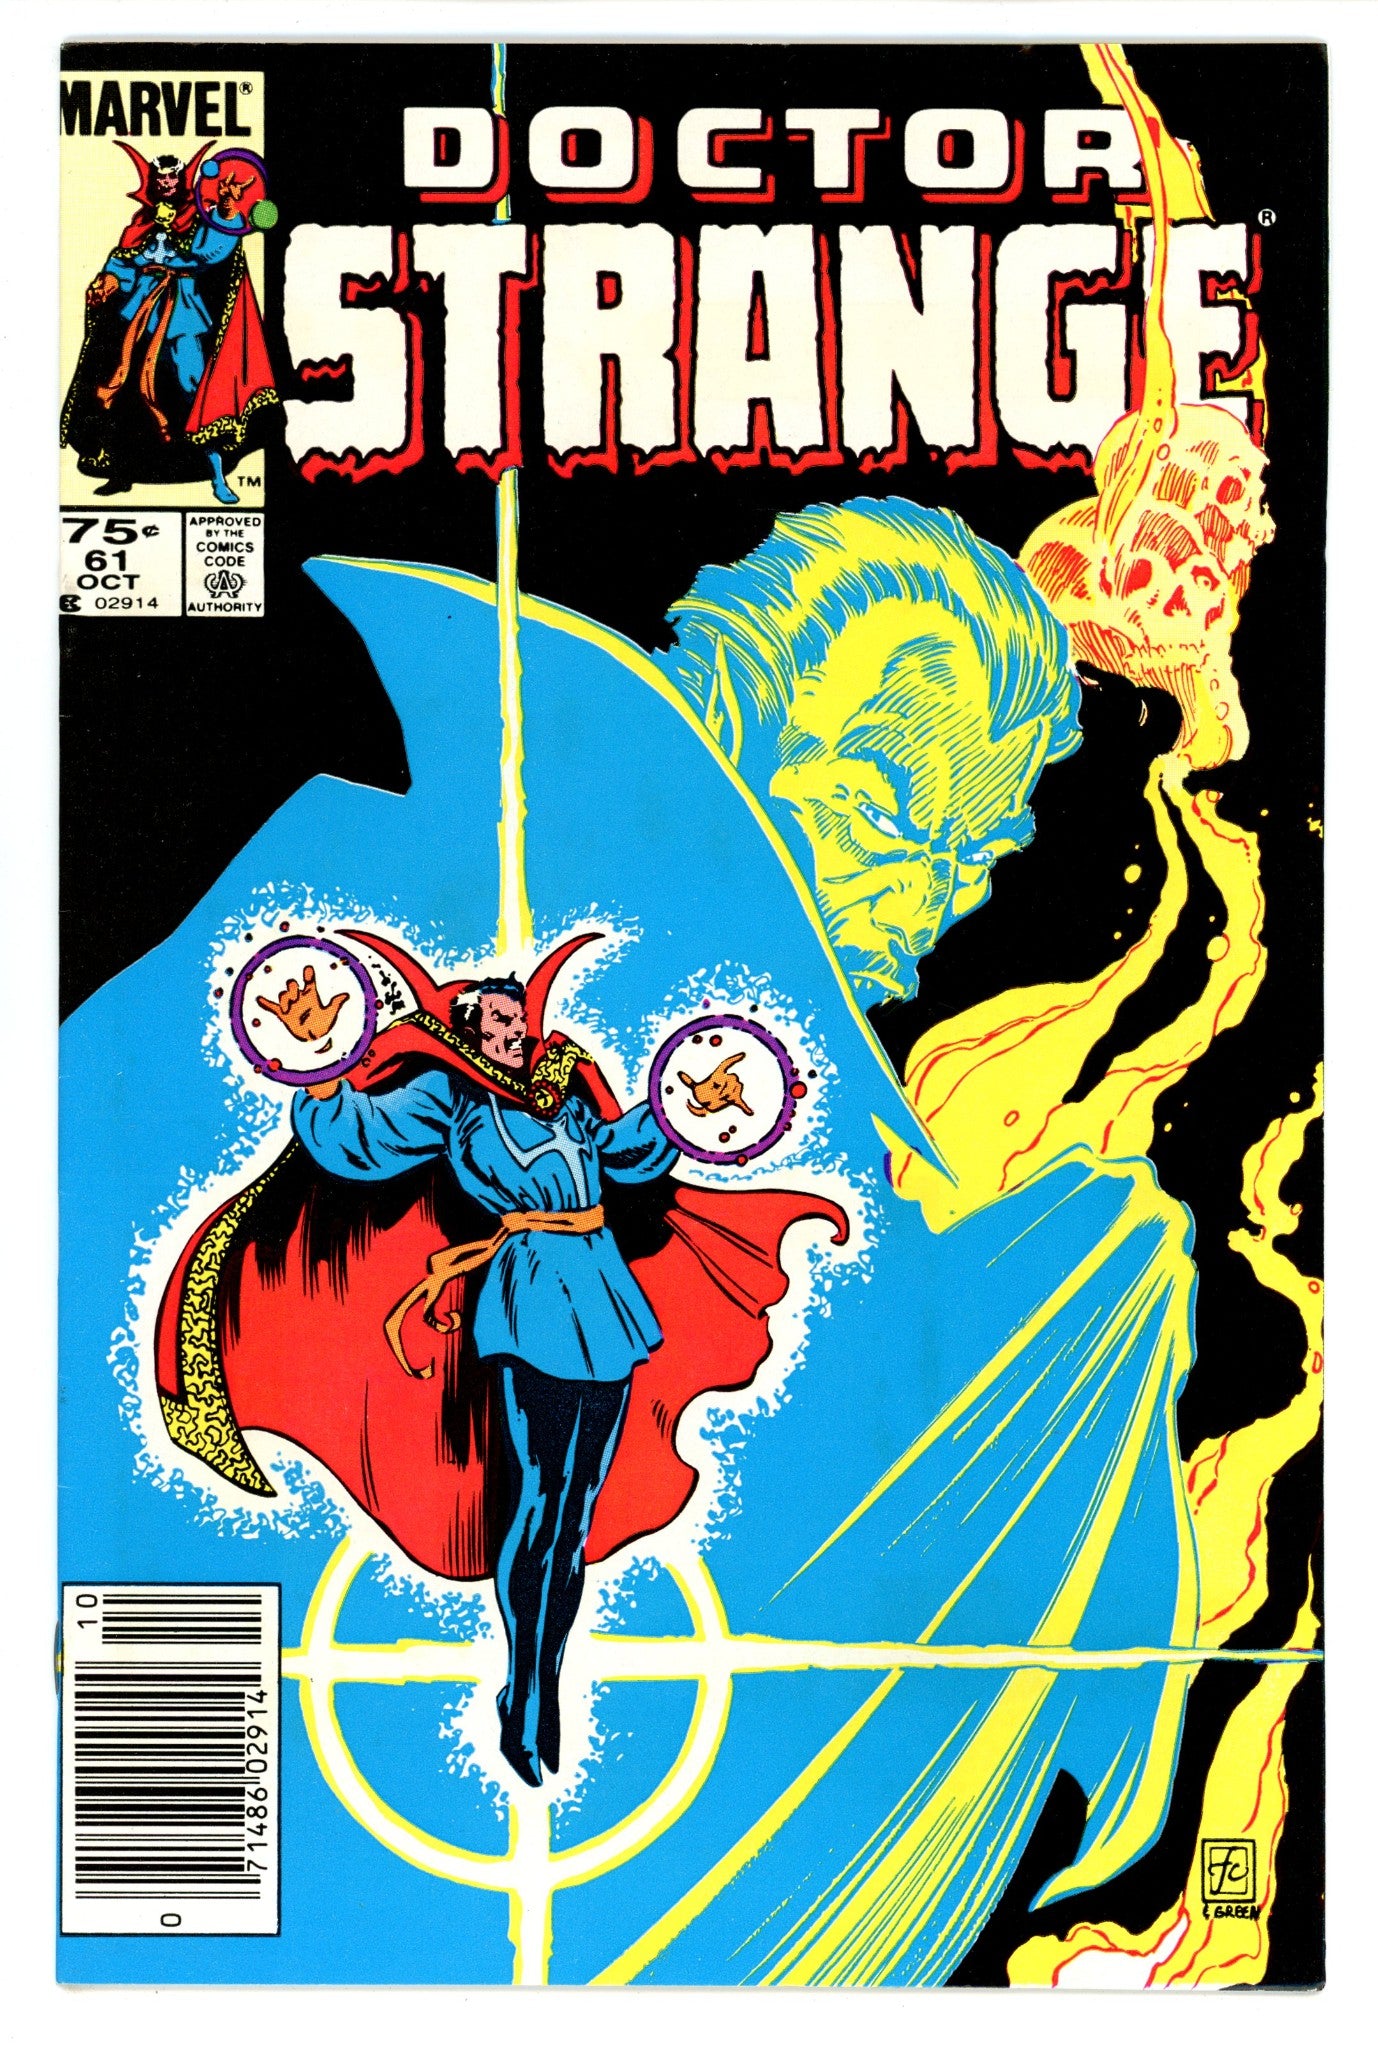 Doctor Strange Vol 2 61 VF (8.0) (1983) Canadian Price Variant 